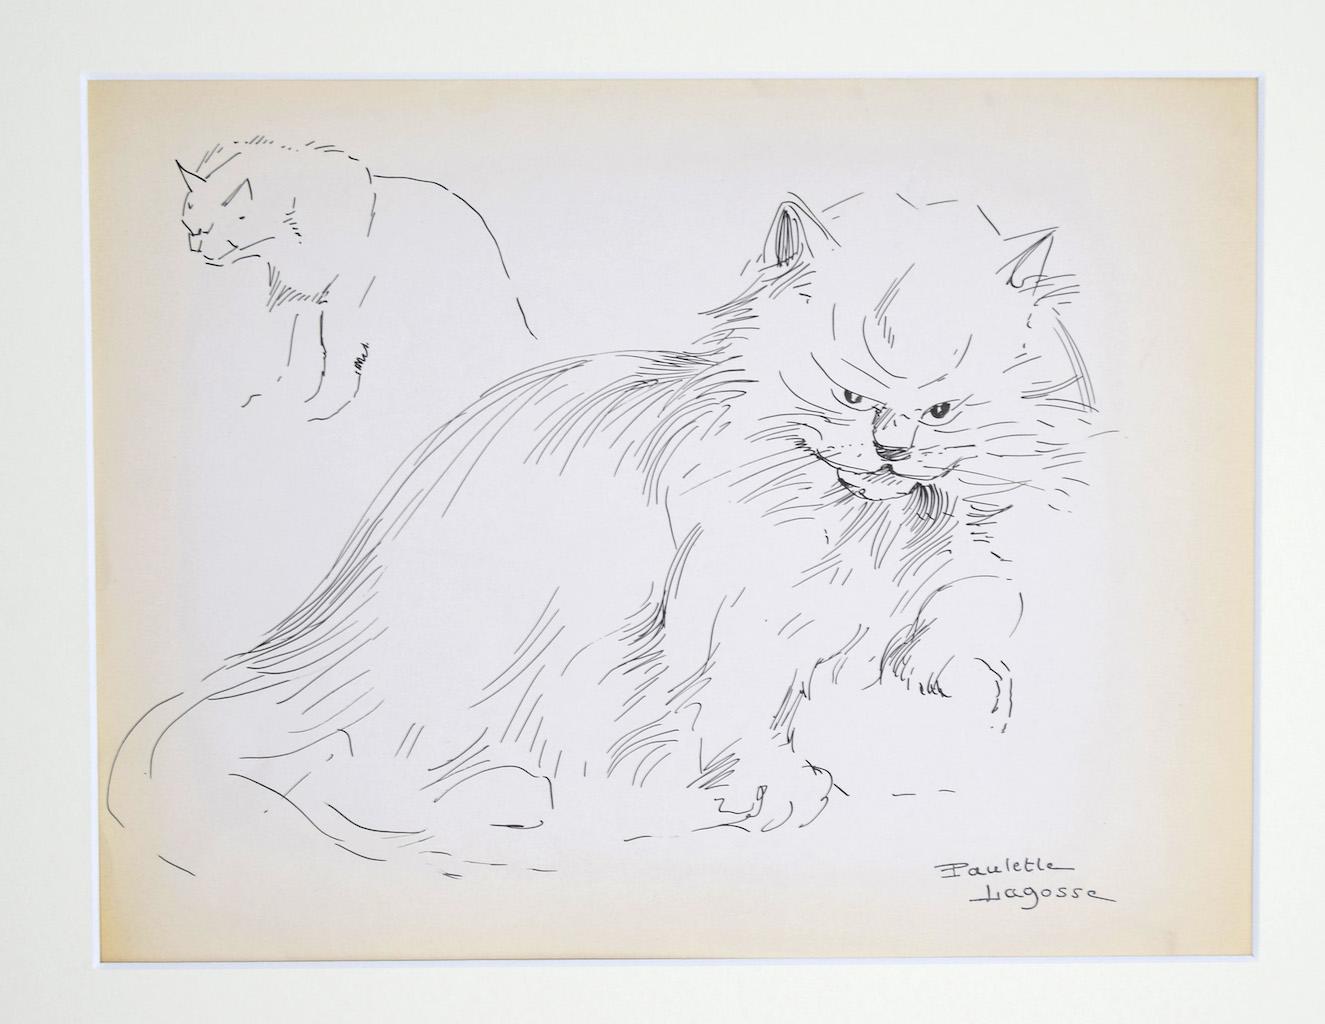 The Cat - Original Pen on Paper by M. P. Lagosse - 1970s